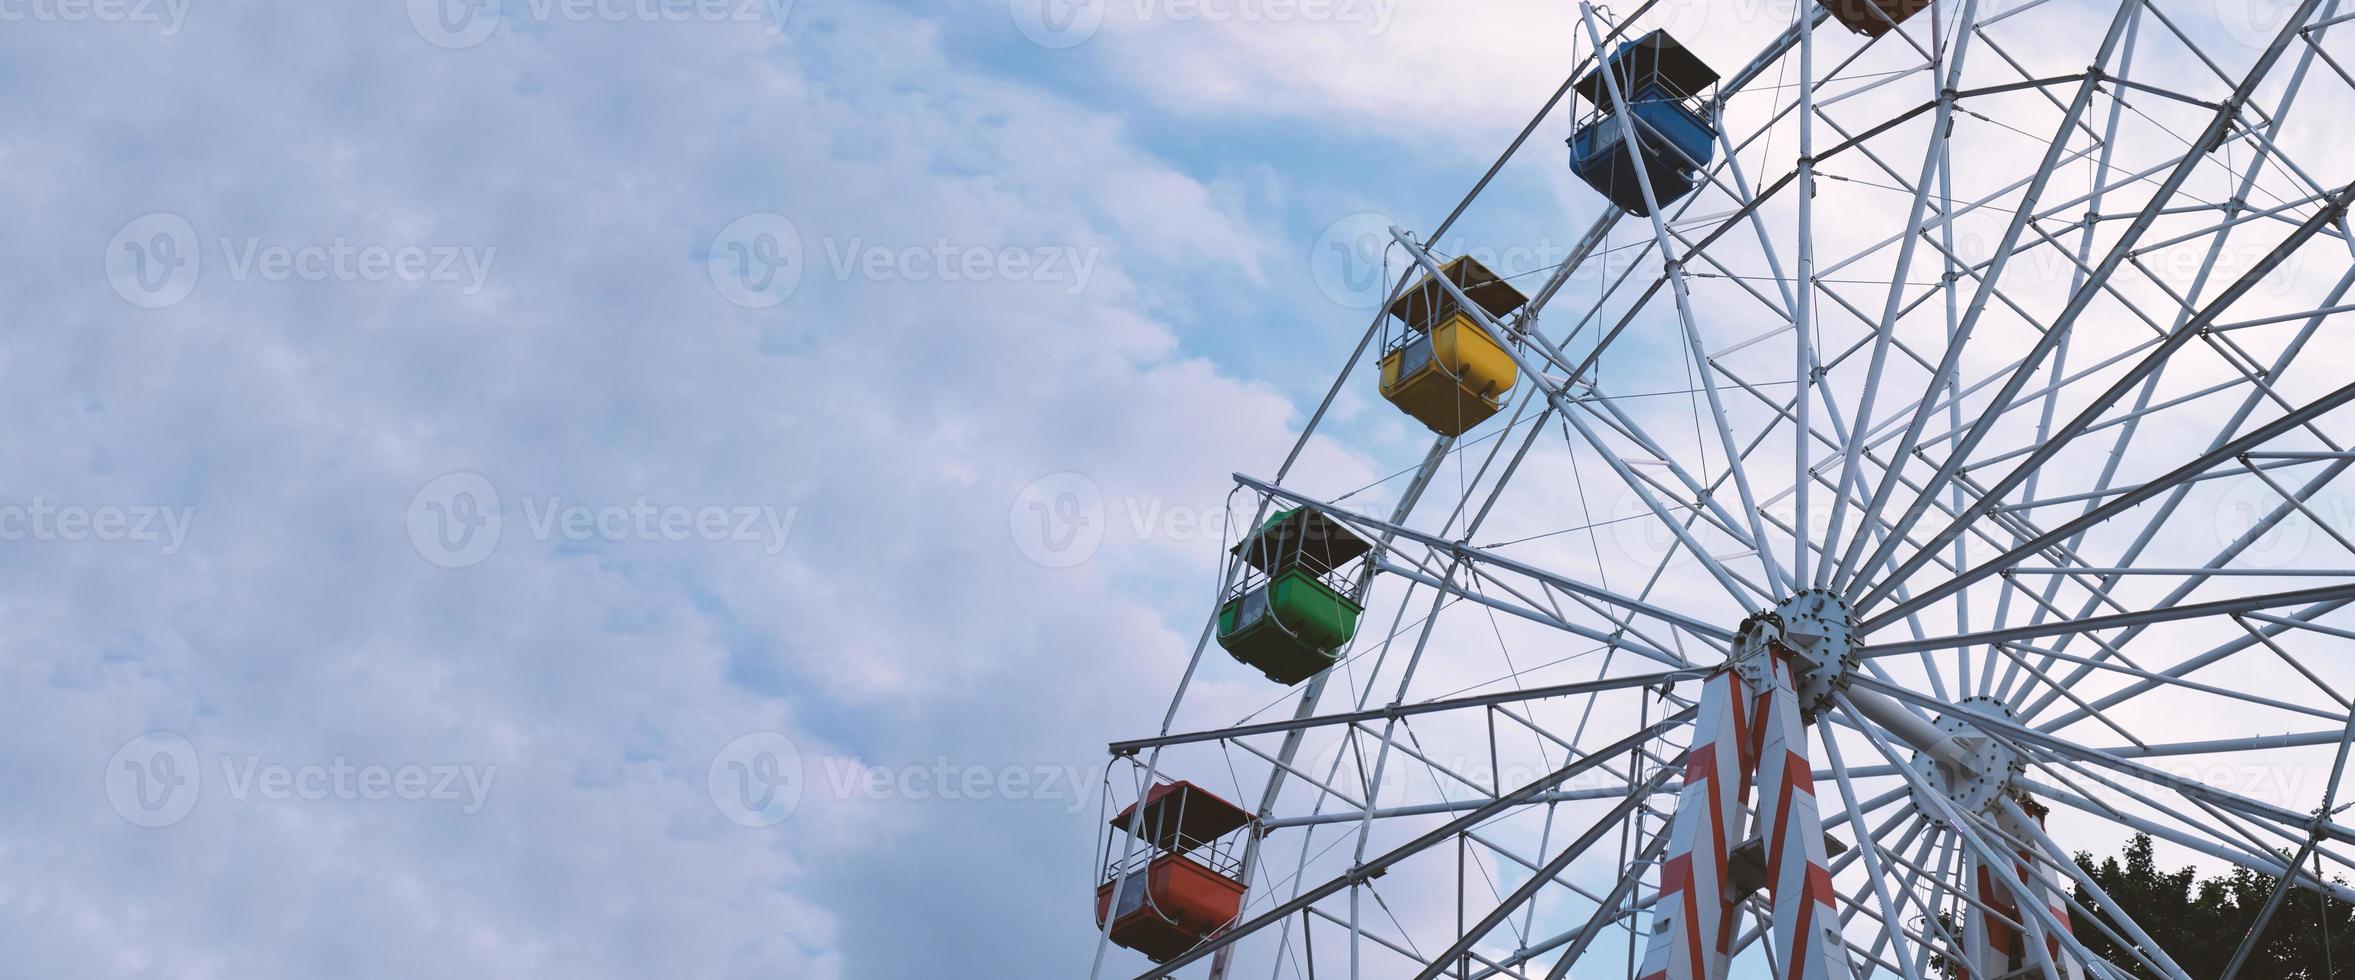 rodas gigantes coloridas no parque de diversões em um fundo de céu azul com nuvens. imagem tonificada. vista de baixo foto